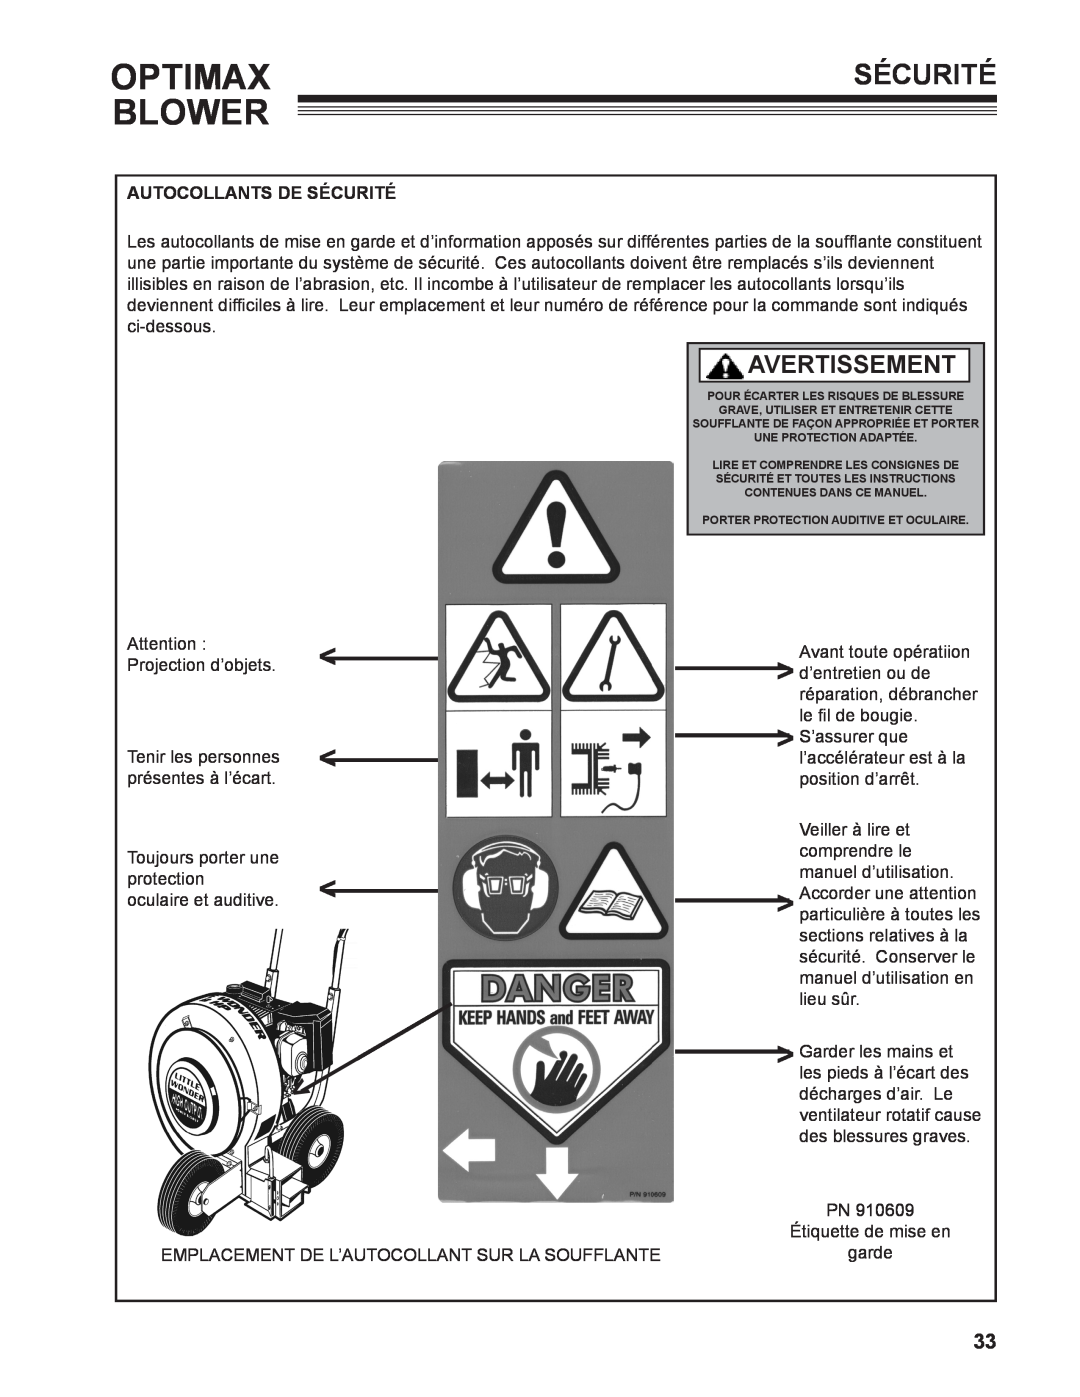 Little Wonder 9131-00-01 technical manual Optimax, Blower, Avertissement, Autocollants De Sécurité 